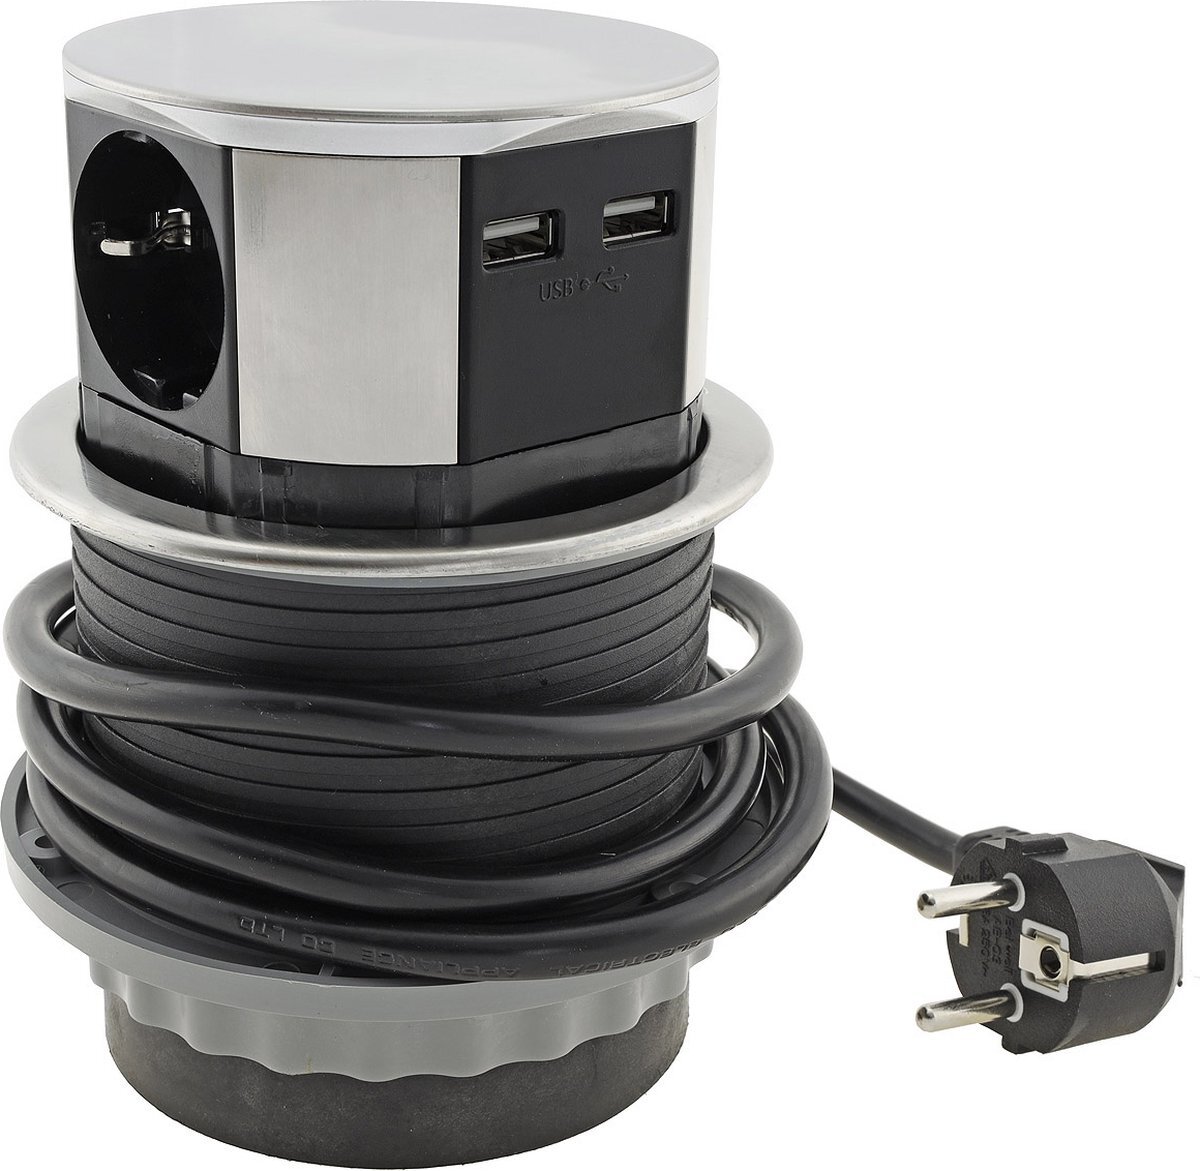 DESIGN LIGHT Verticale Stekkerdoos met USB - Pop up stekkerblok met 3 stopcontacten en 2 USB - Ø 100mm Inbouw Verdeelstekker met 1.4 meter kabel - Stekkerblok voor max. 3600 Watt